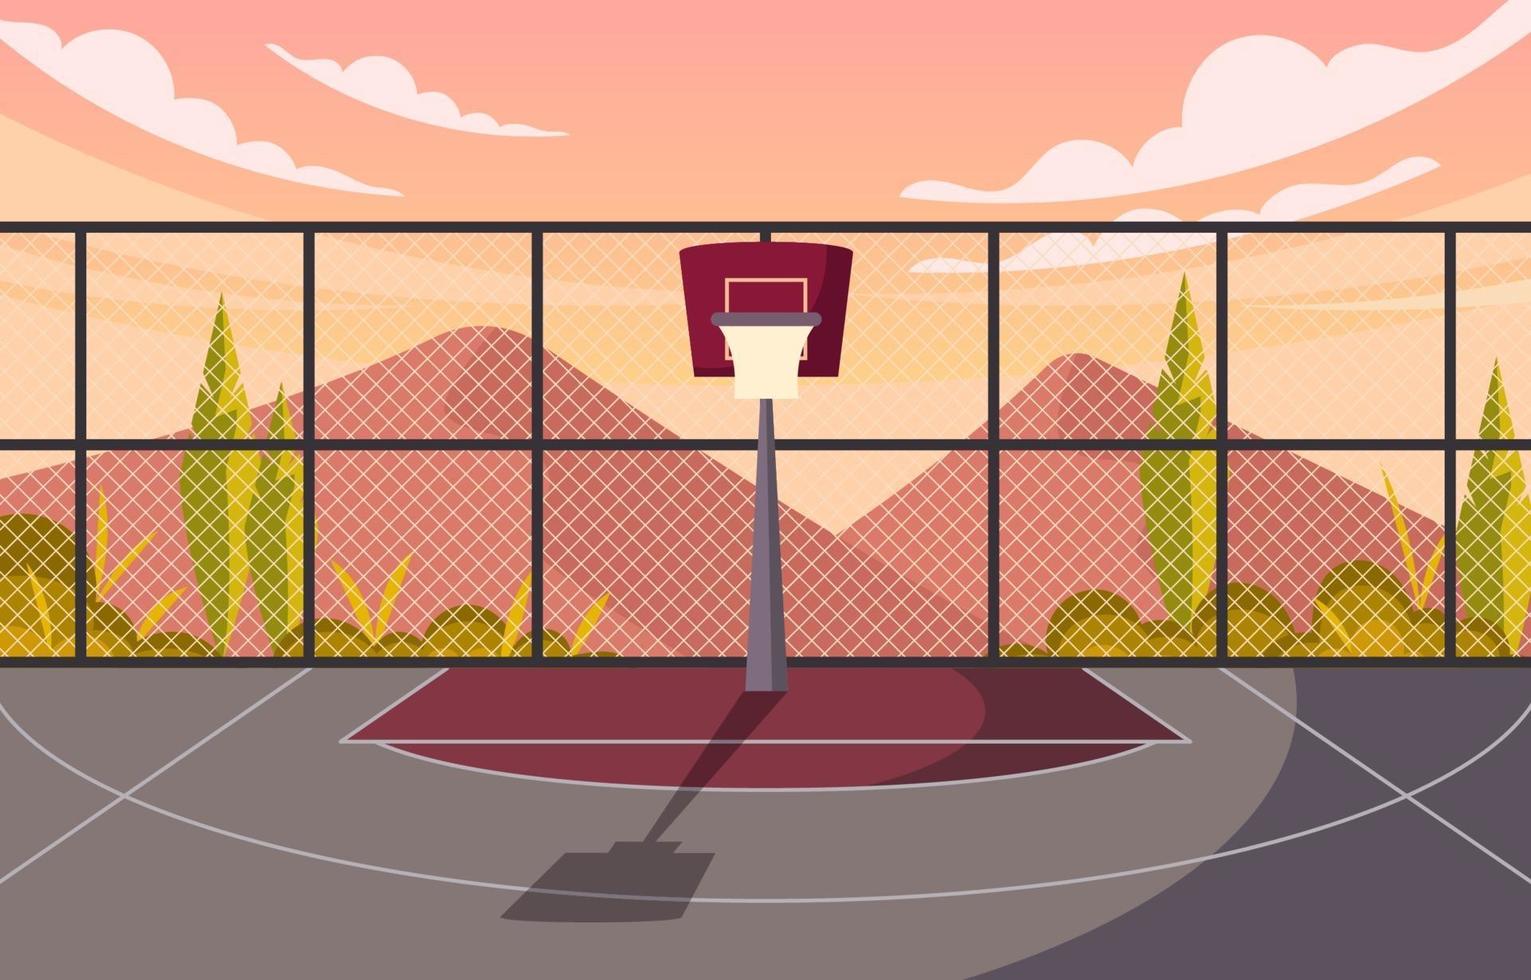 eenzaam bord op basketbalveld met uitzicht op bergen vector